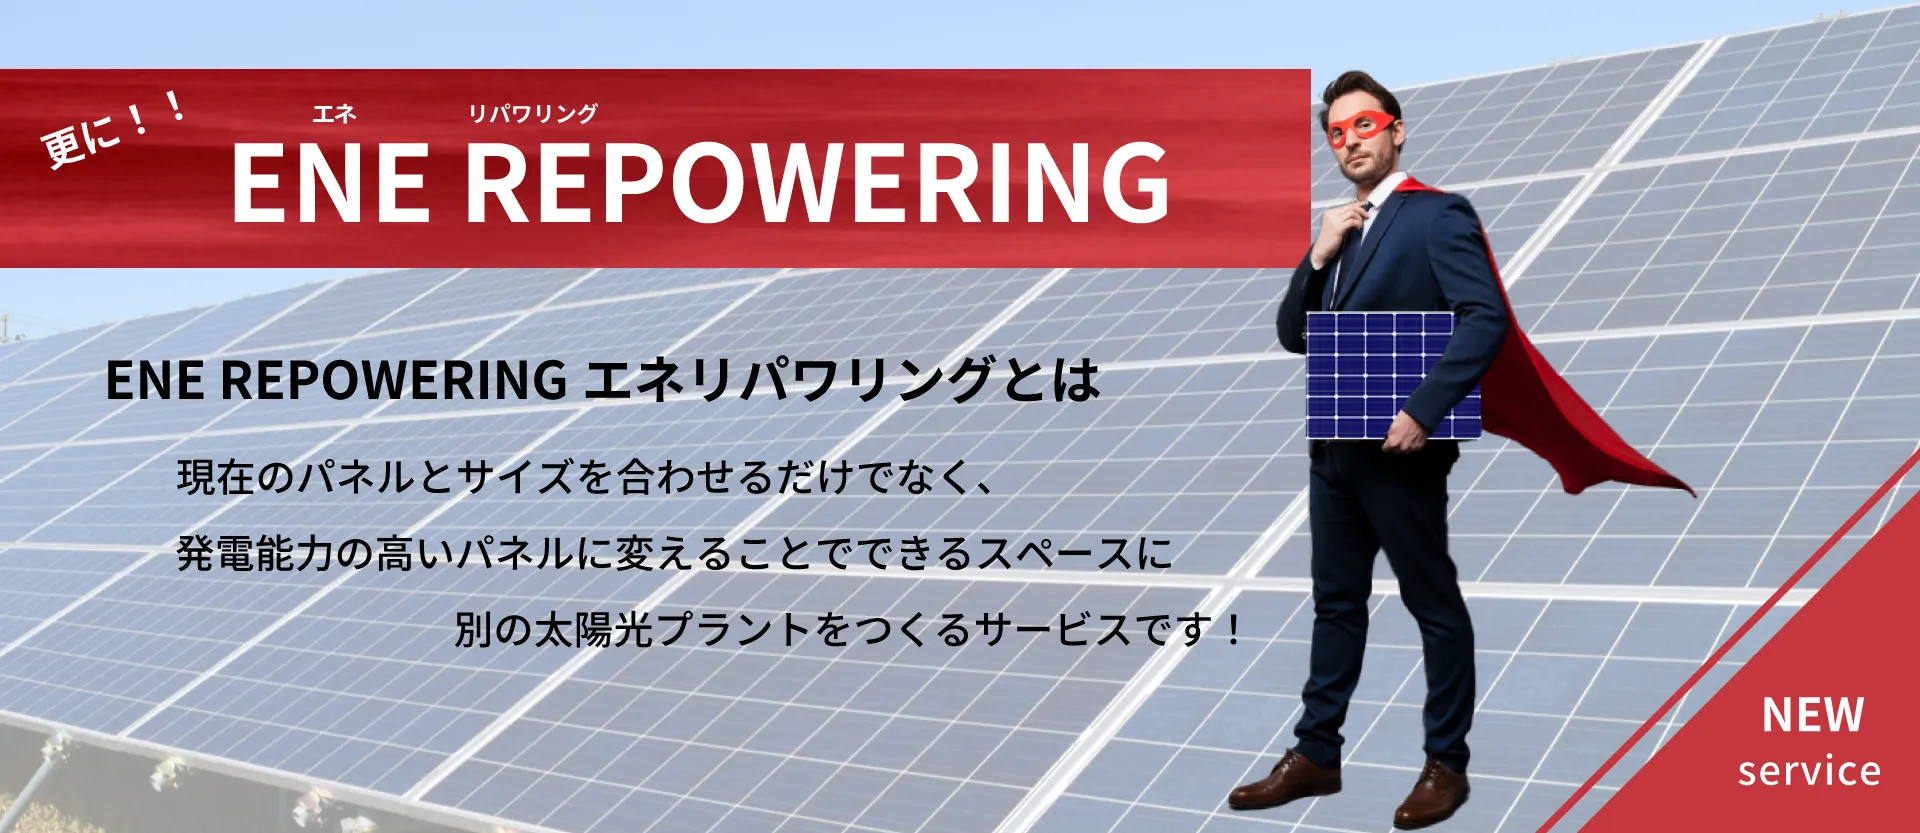 ENE REPOWERRING（エネリパワリング）とは発電能力の高いパネルを導入することで余剰スペースを確保し、新たな太陽光プラントを作るサービスです